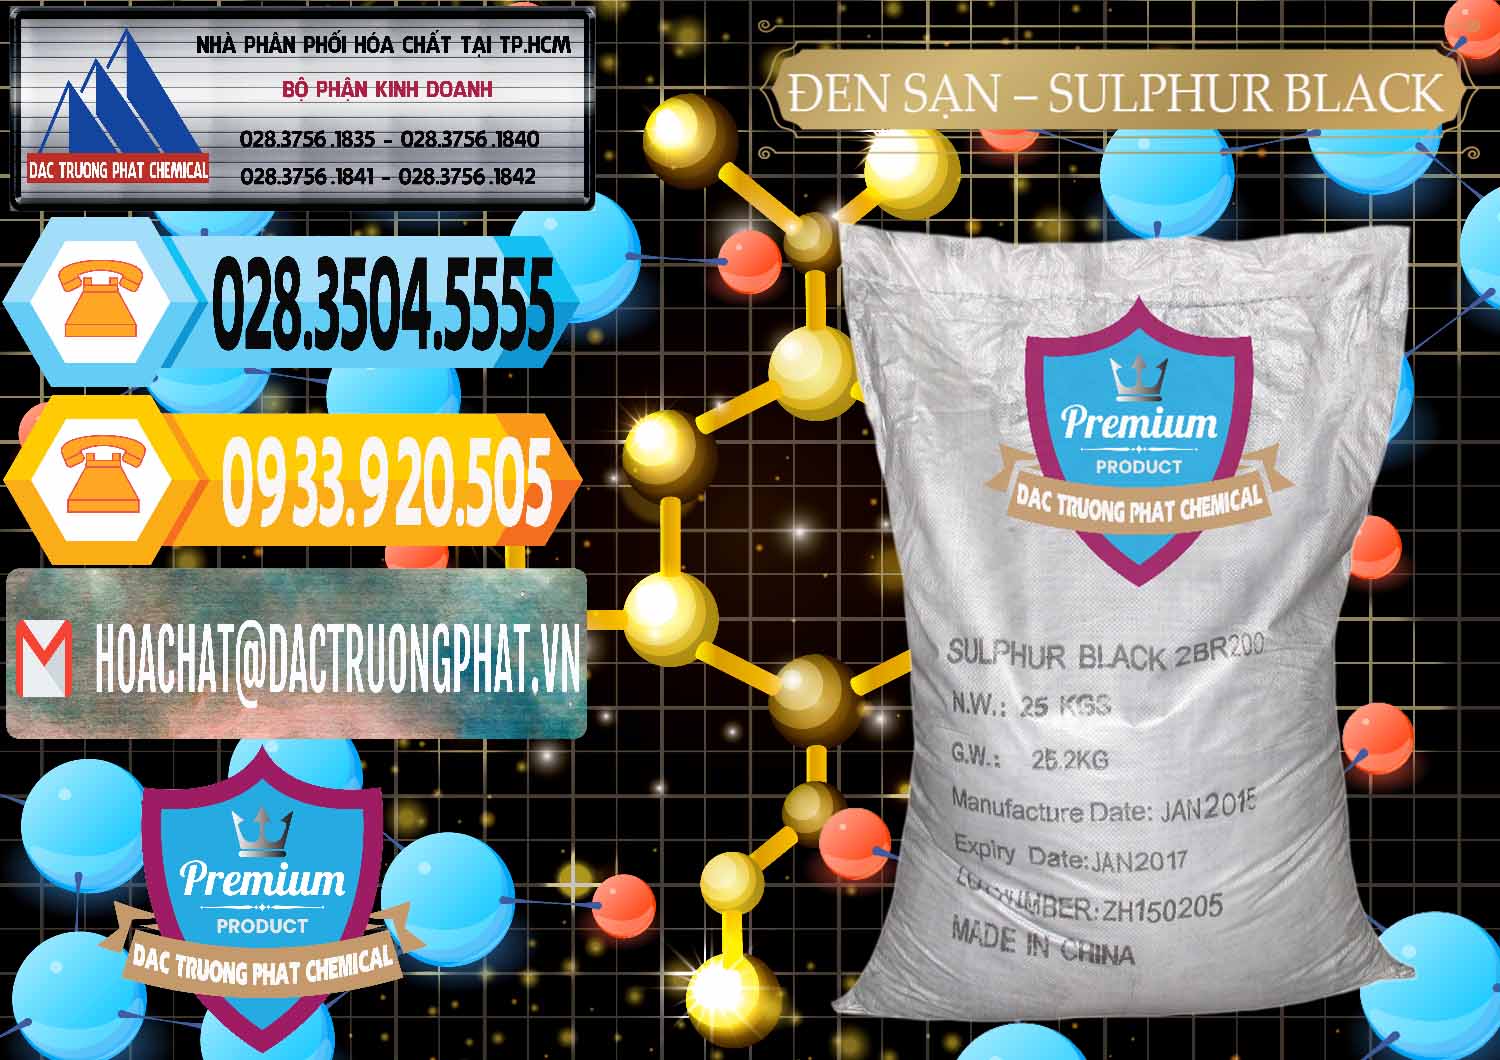 Nơi nhập khẩu _ bán Đen Sạn – Sulphur Black Trung Quốc China - 0062 - Cty chuyên bán - cung cấp hóa chất tại TP.HCM - hoachattayrua.net